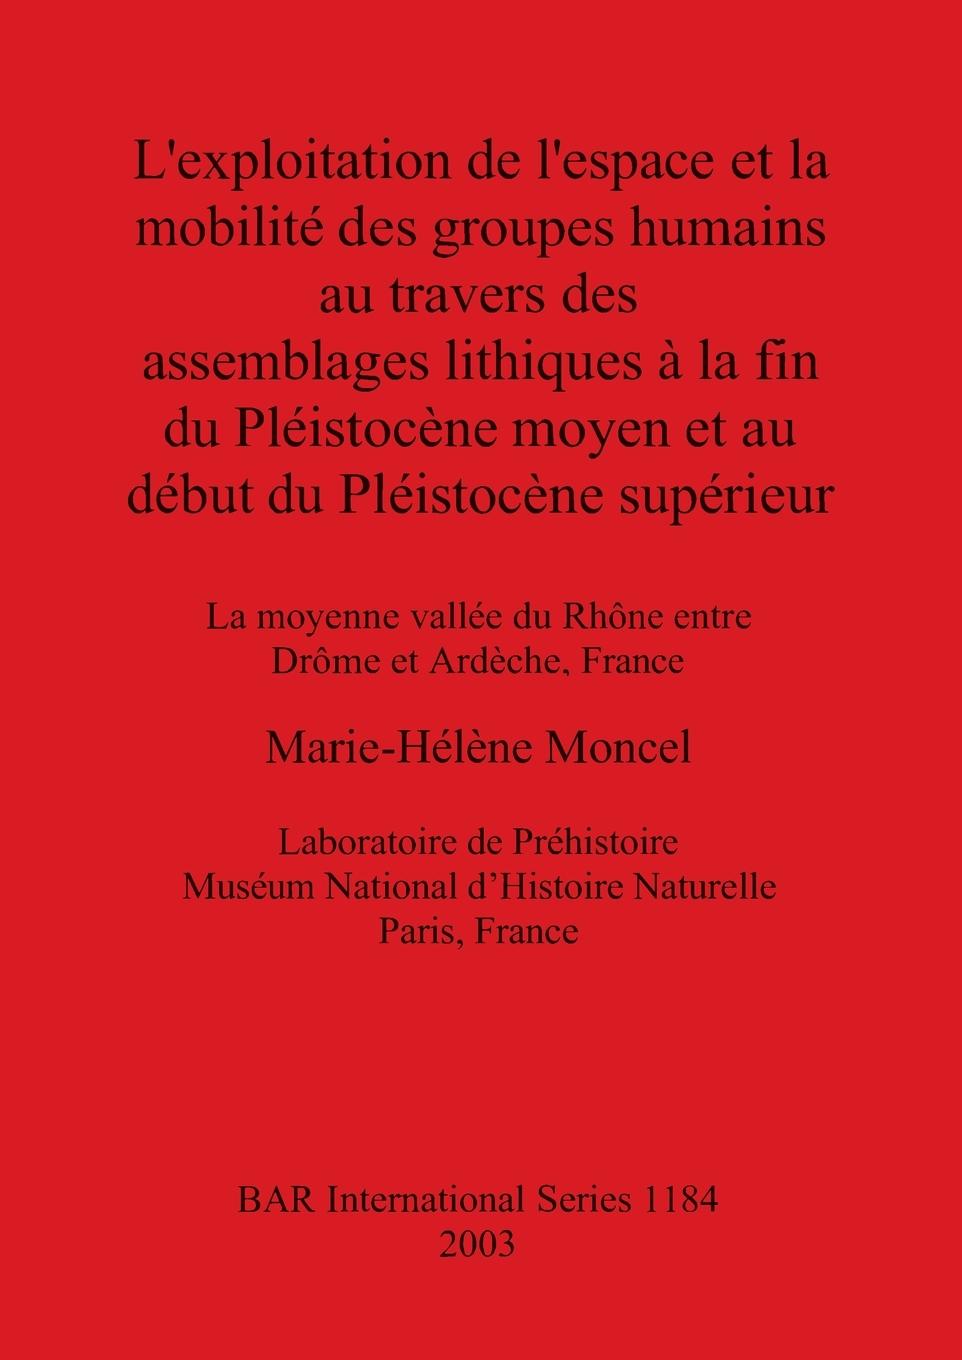 Carte exploitation de l'espace et la mobilite des groupes humains au travers des assemblages lithiques a la fin du Pleistoncene moyen et au debut du Pleist 